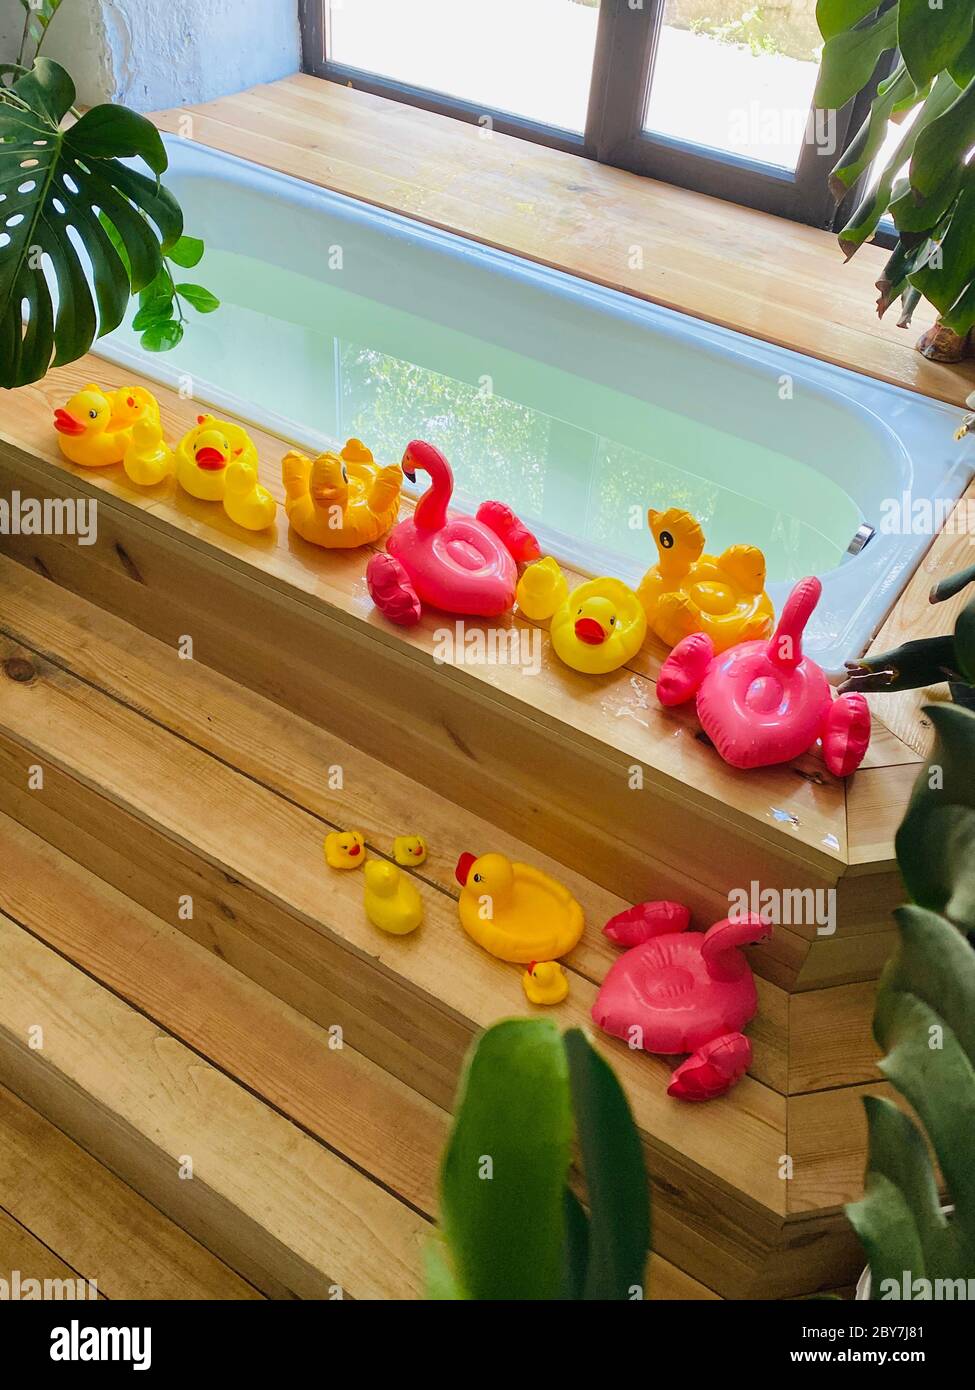 Los juguetes para niños en forma de patos y flamencos están al lado de una bañera llena de agua para bañar a un en fondo de las plantas de casa